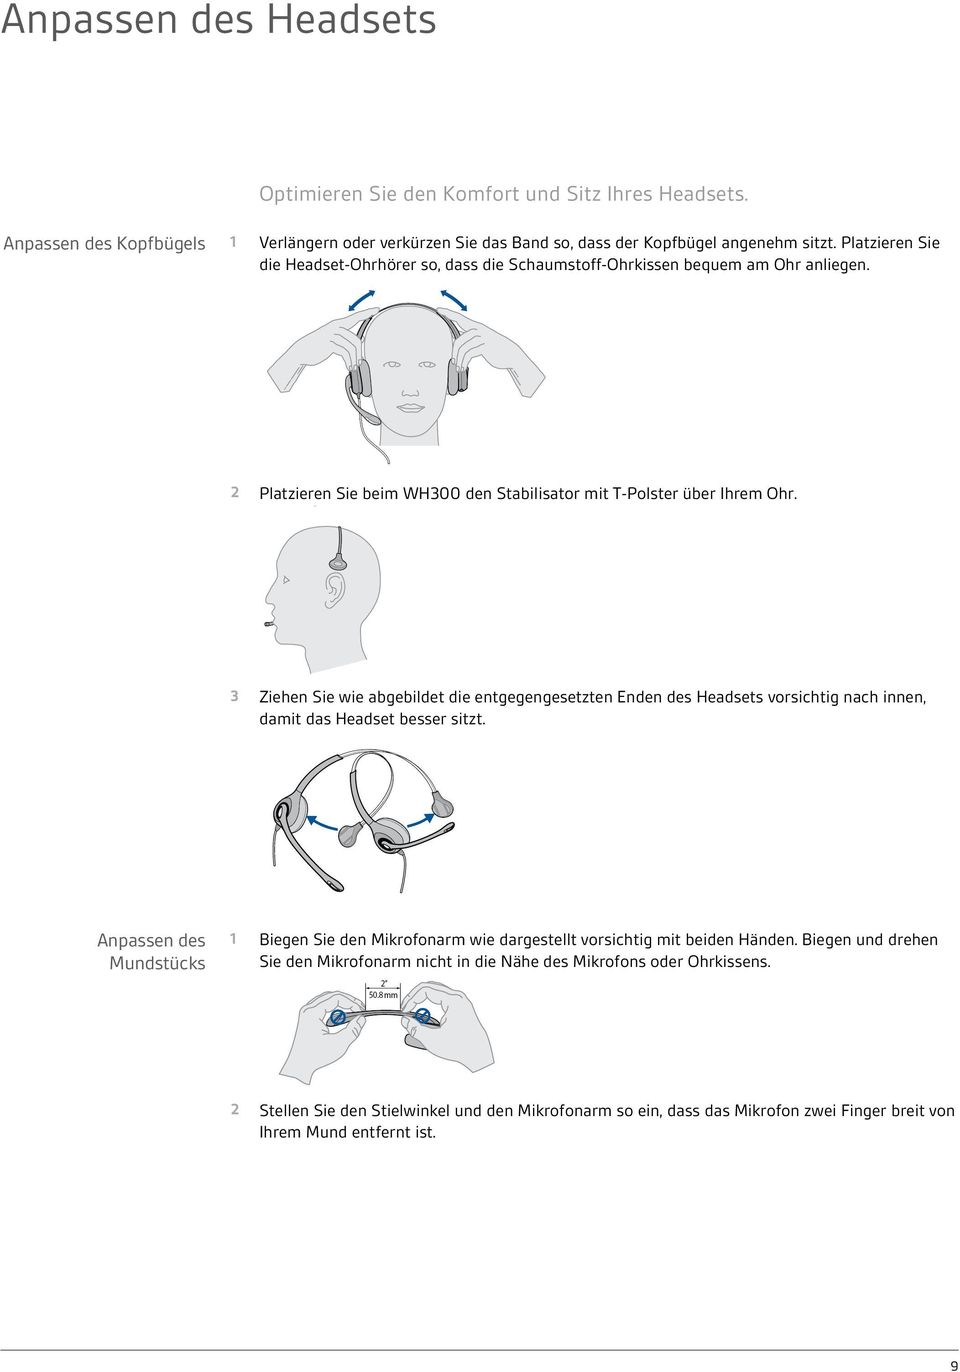 3 Ziehen Sie wie abgebildet die entgegengesetzten Enden des Headsets vorsichtig nach innen, damit das Headset besser sitzt.